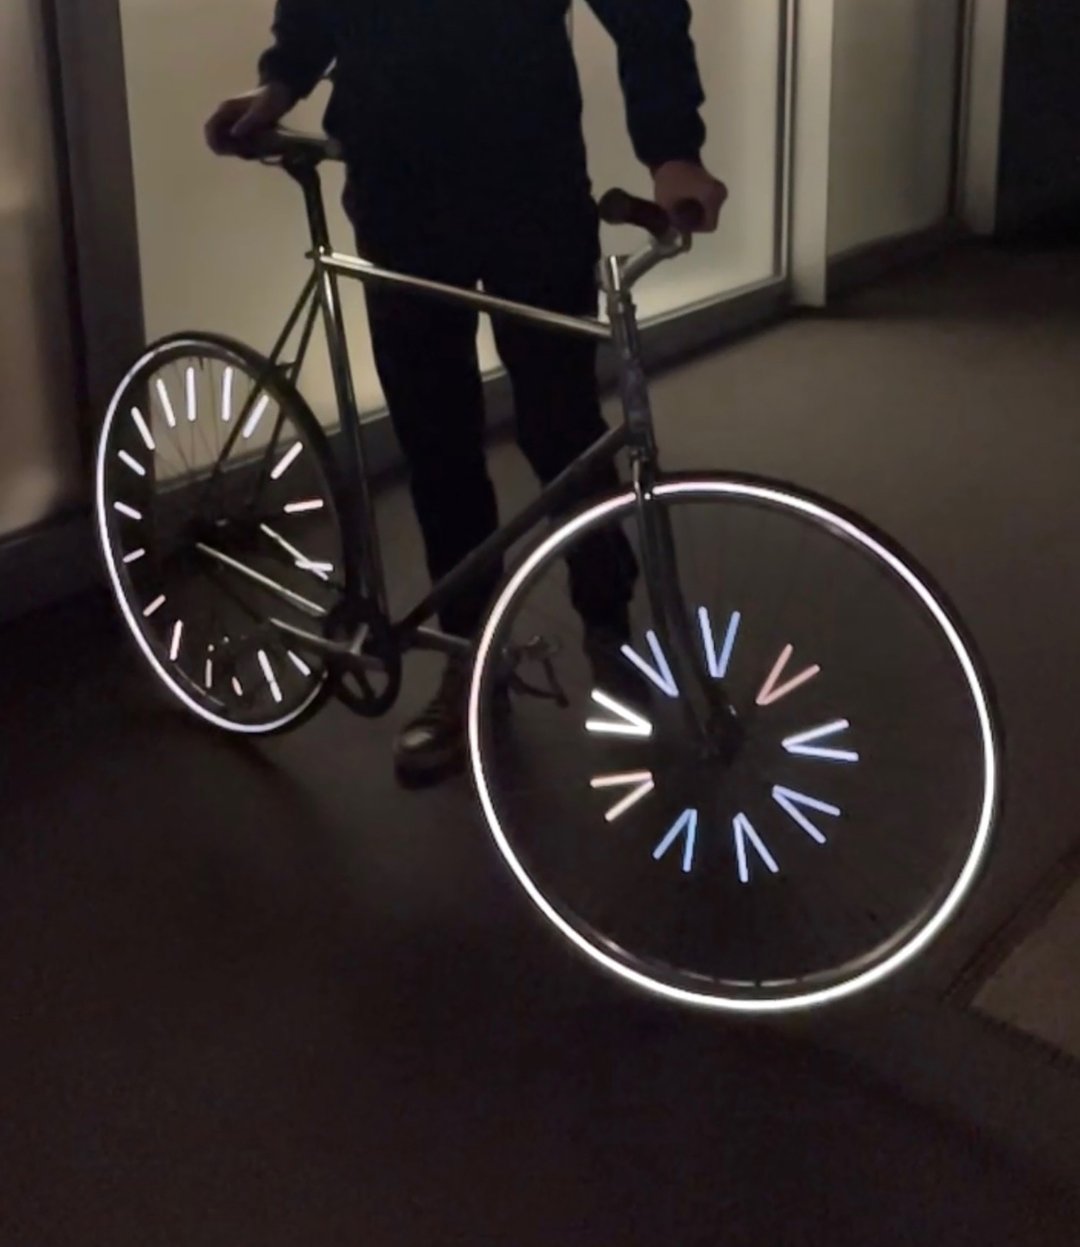 Réflecteurs rayons de vélo - Rainette